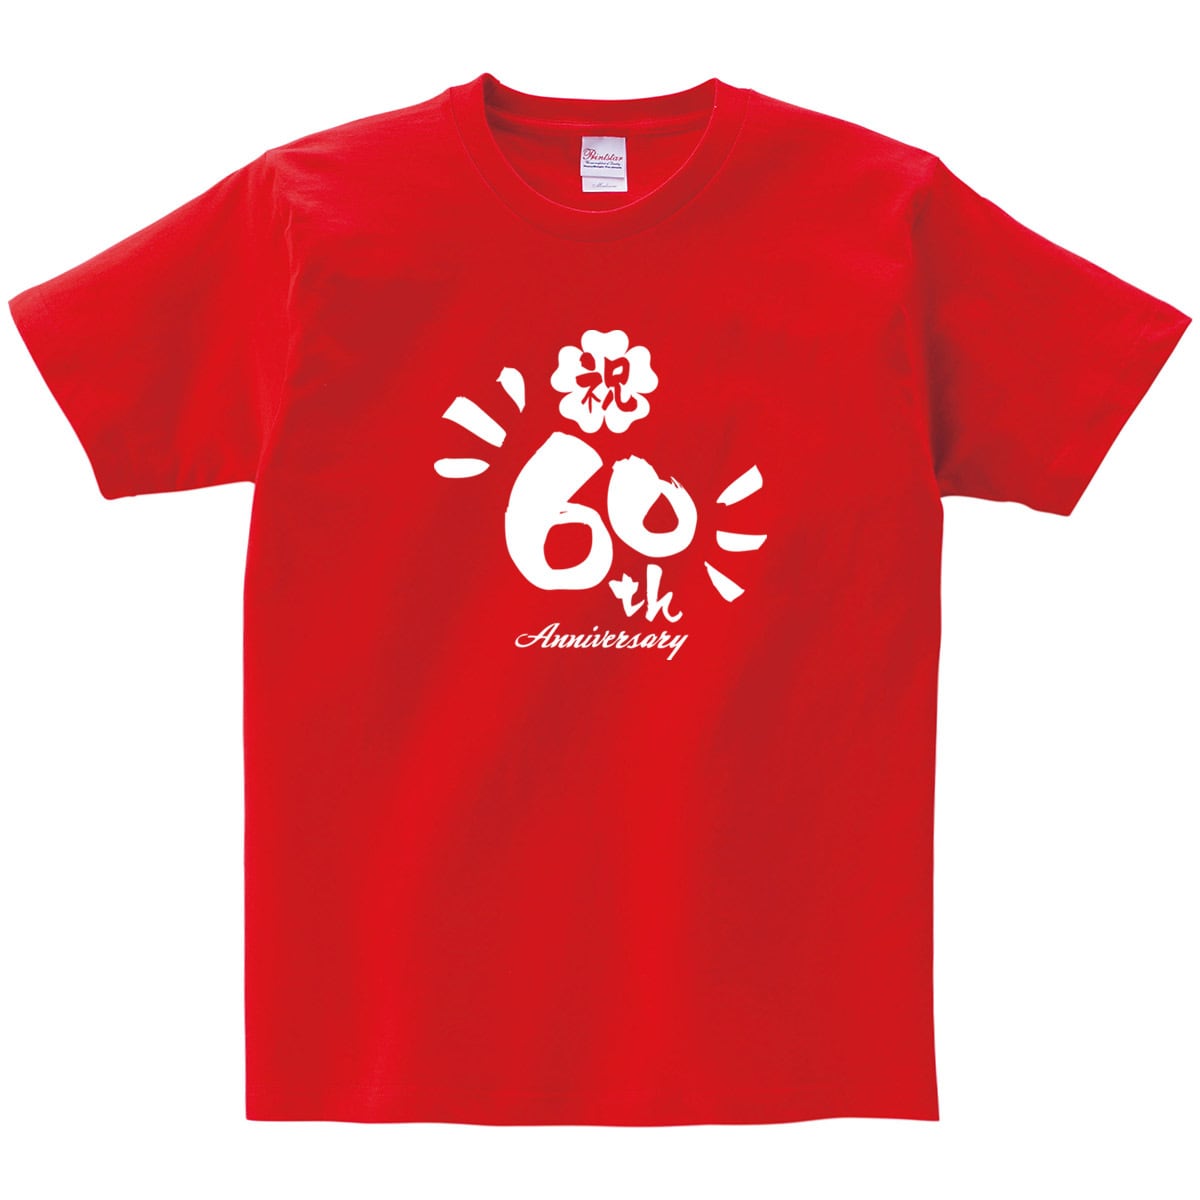 還暦祝い 60th デザイン Tシャツ ms39 還暦 お祝い 父 母 ギフト